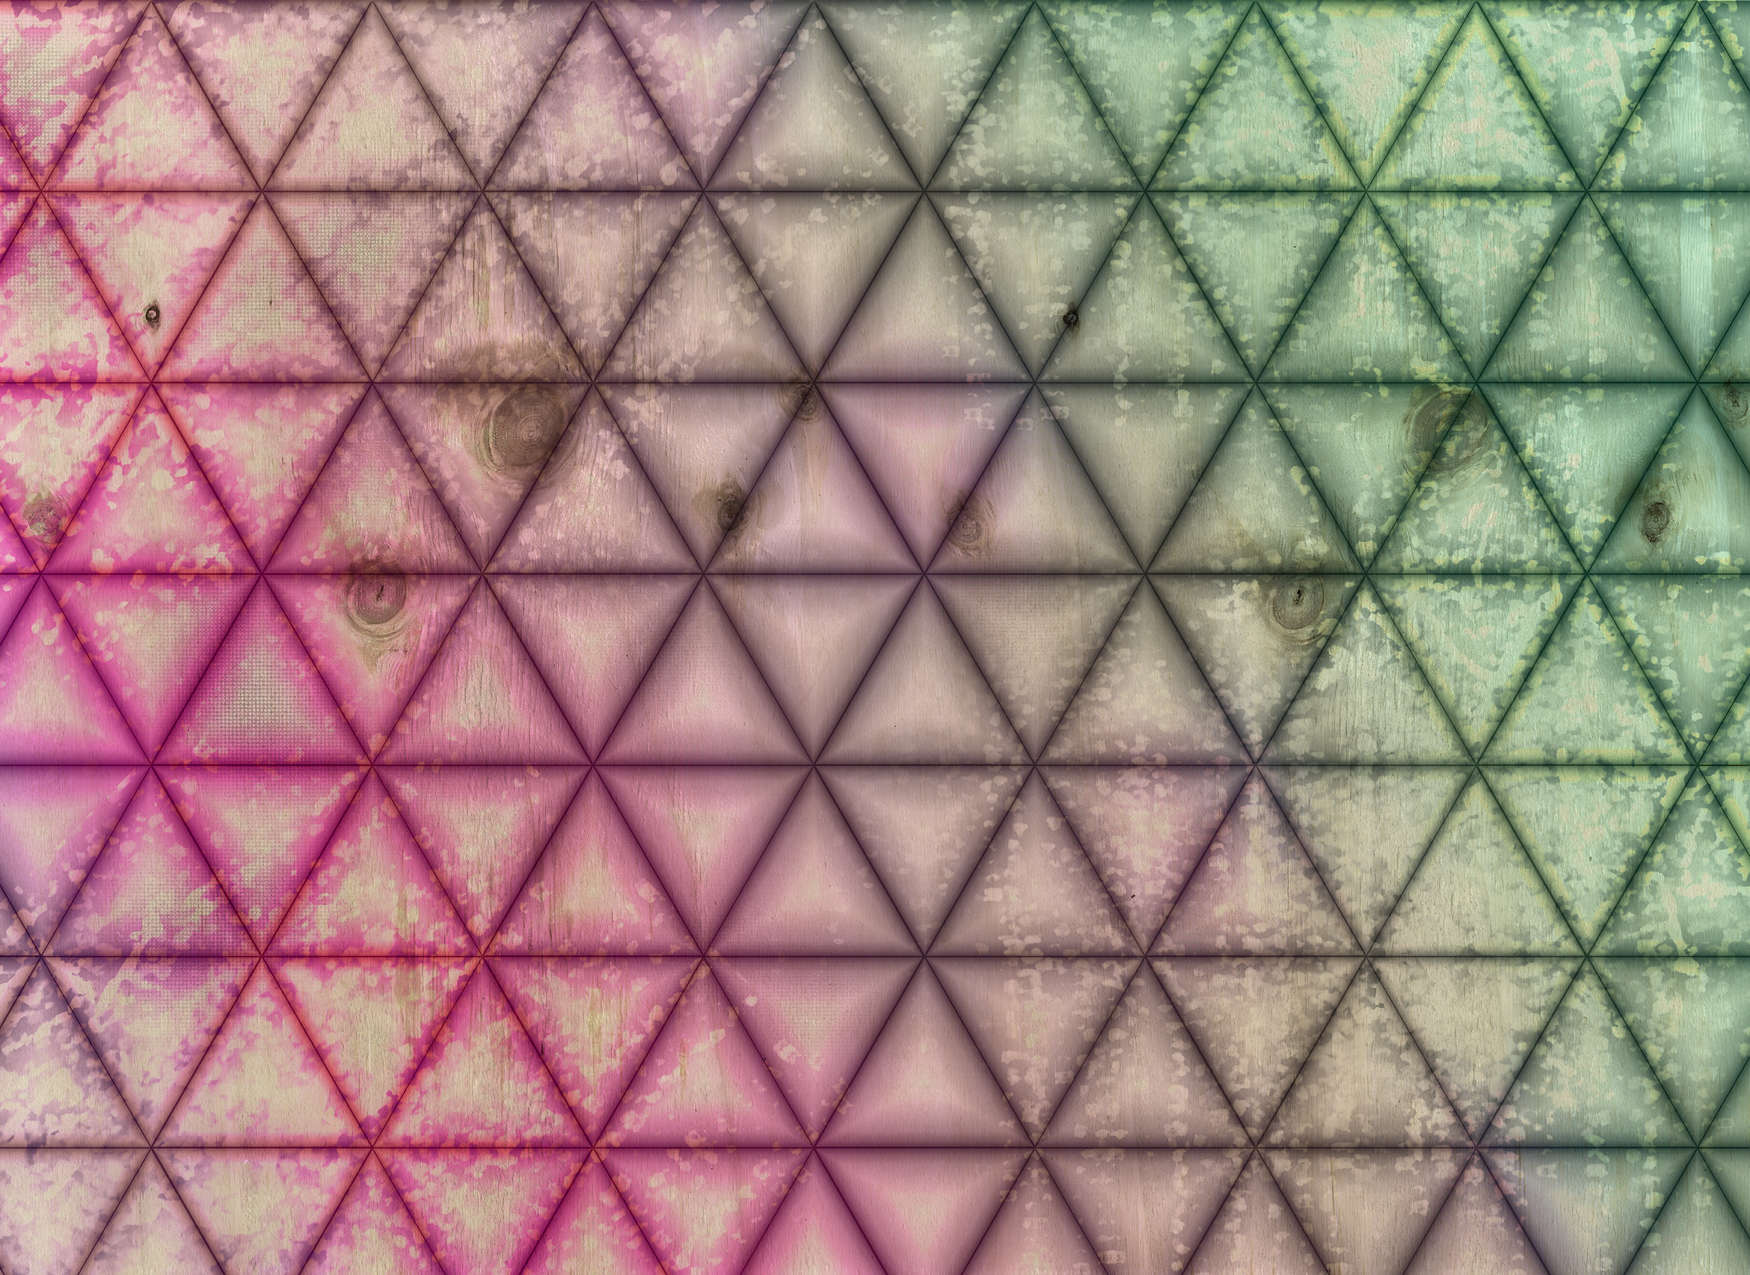             Fotomurali con motivo geometrico a triangoli in legno - verde, rosa
        